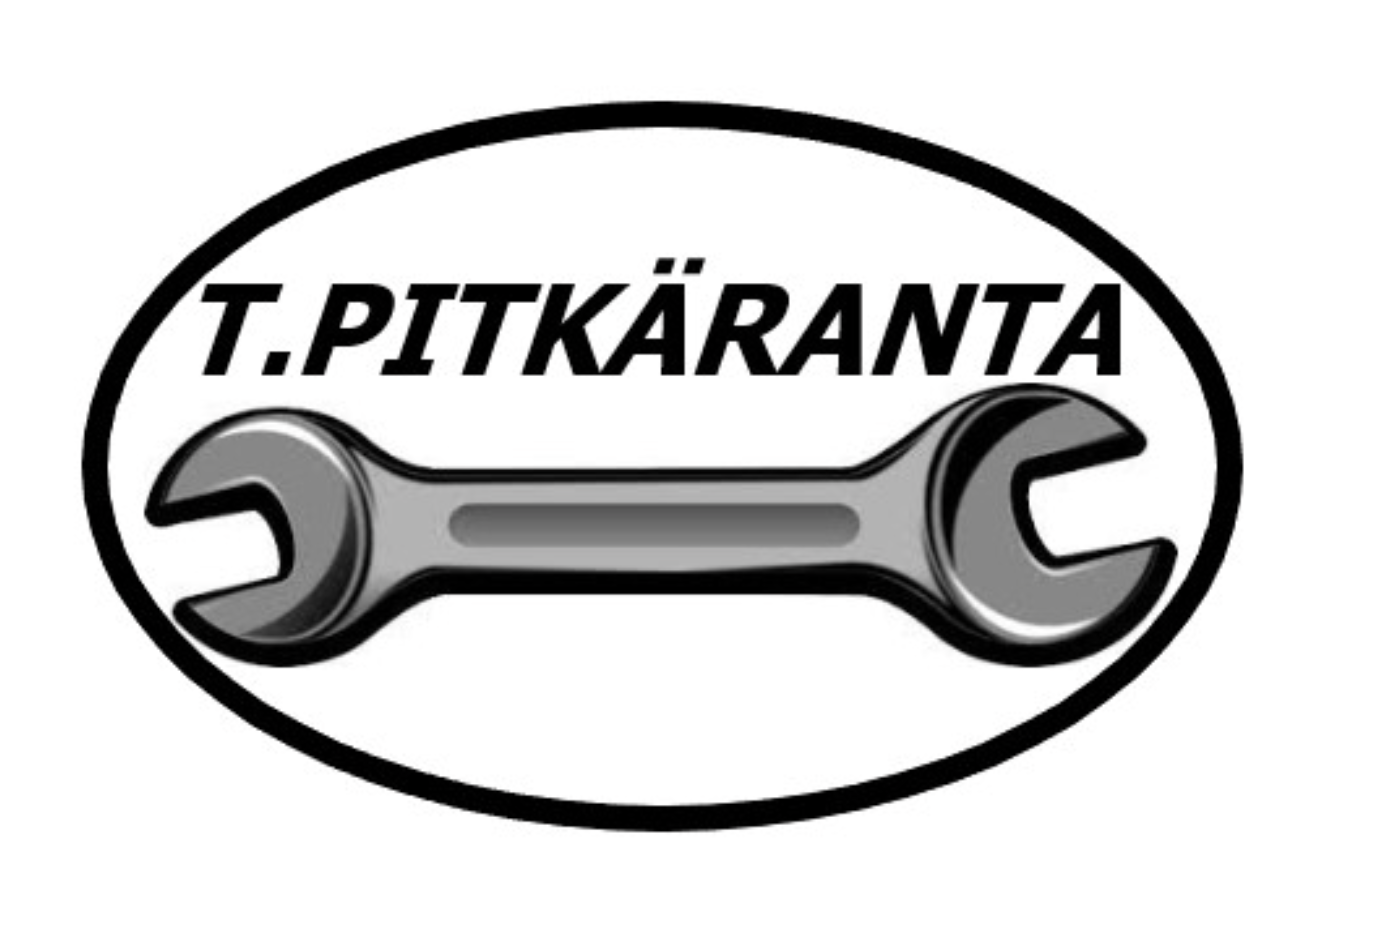 T.Pitkäranta.png